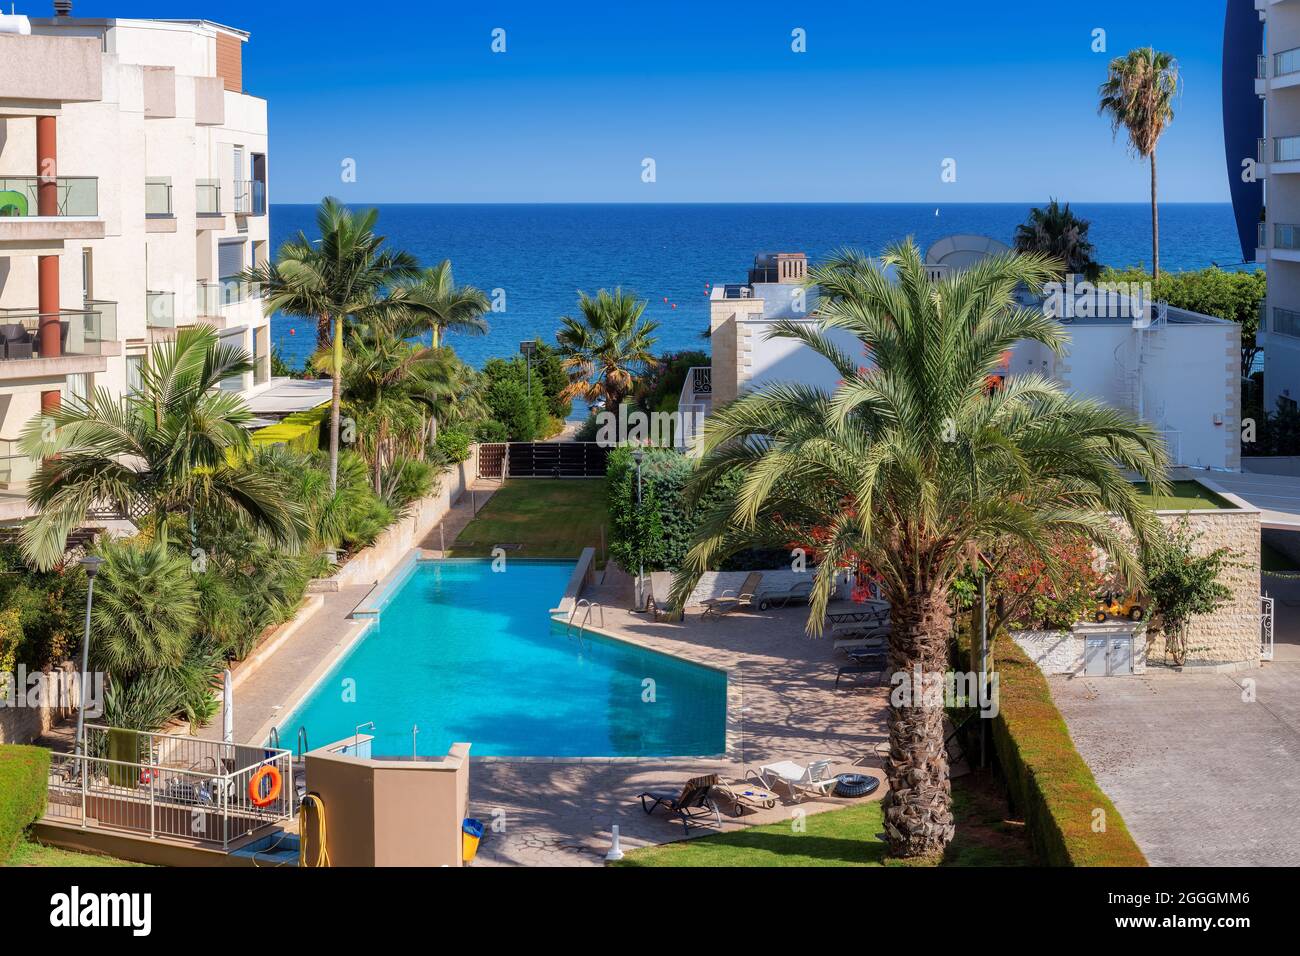 Vista aerea della costa di Cipro con piscina blu, palme e spiaggia nel mare Mediterraneo, Limassol, Cipro Foto Stock